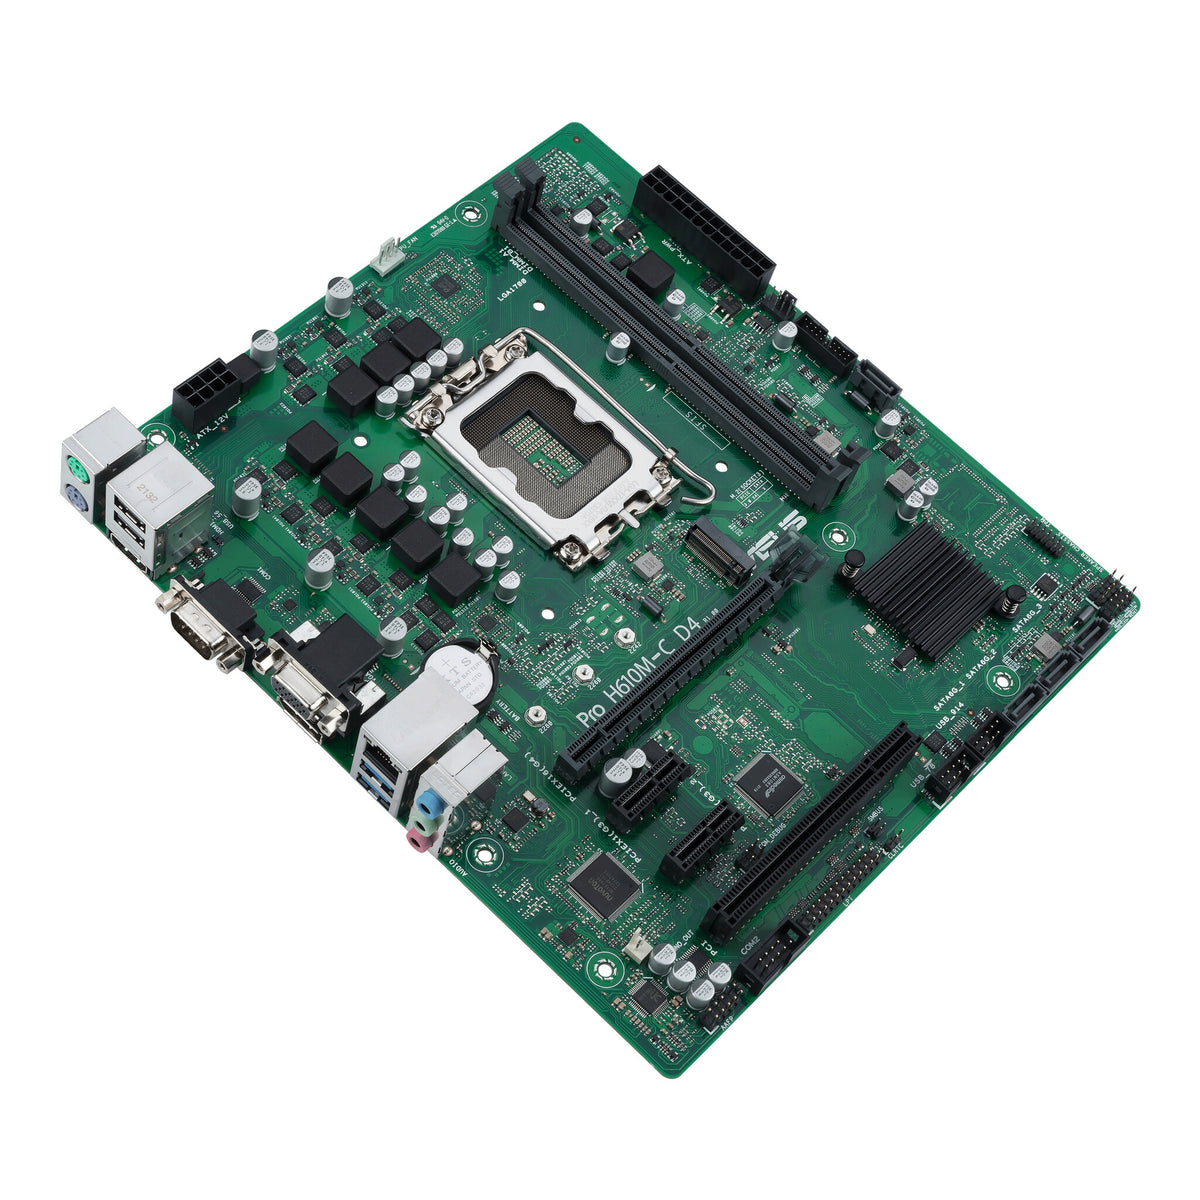 ASUS PRO H610M-C D4-CSM micro ATX motherboard - Intel H610 LGA 1700